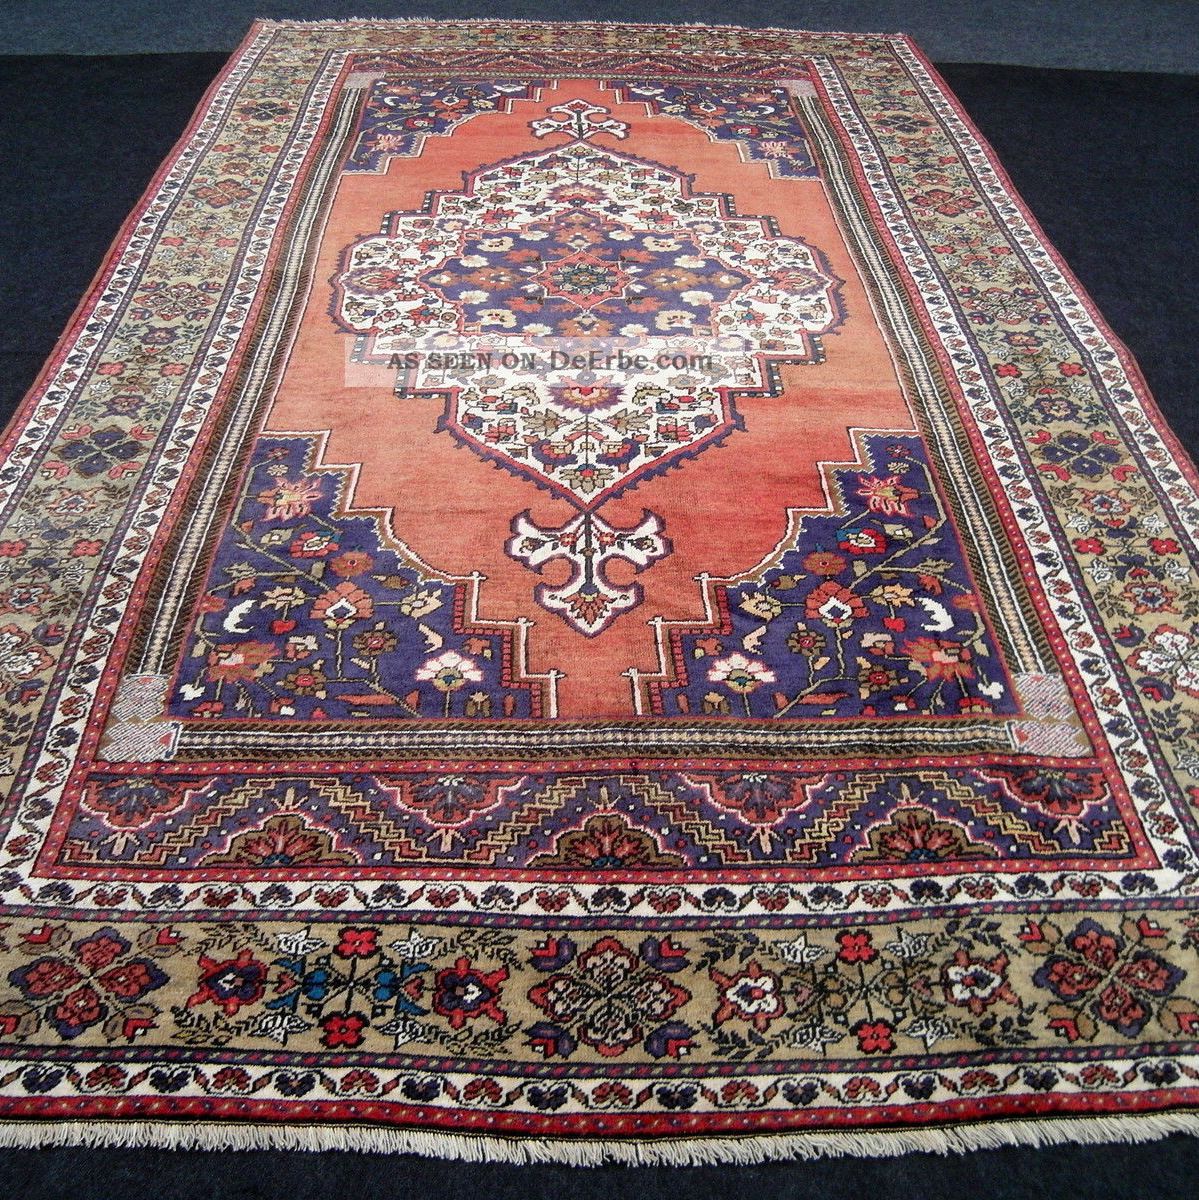 Antiker Alter Orient Teppich 394 X 240 Cm Yahyali Antique Old Turkish Carpet Rug Teppiche & Flachgewebe Bild